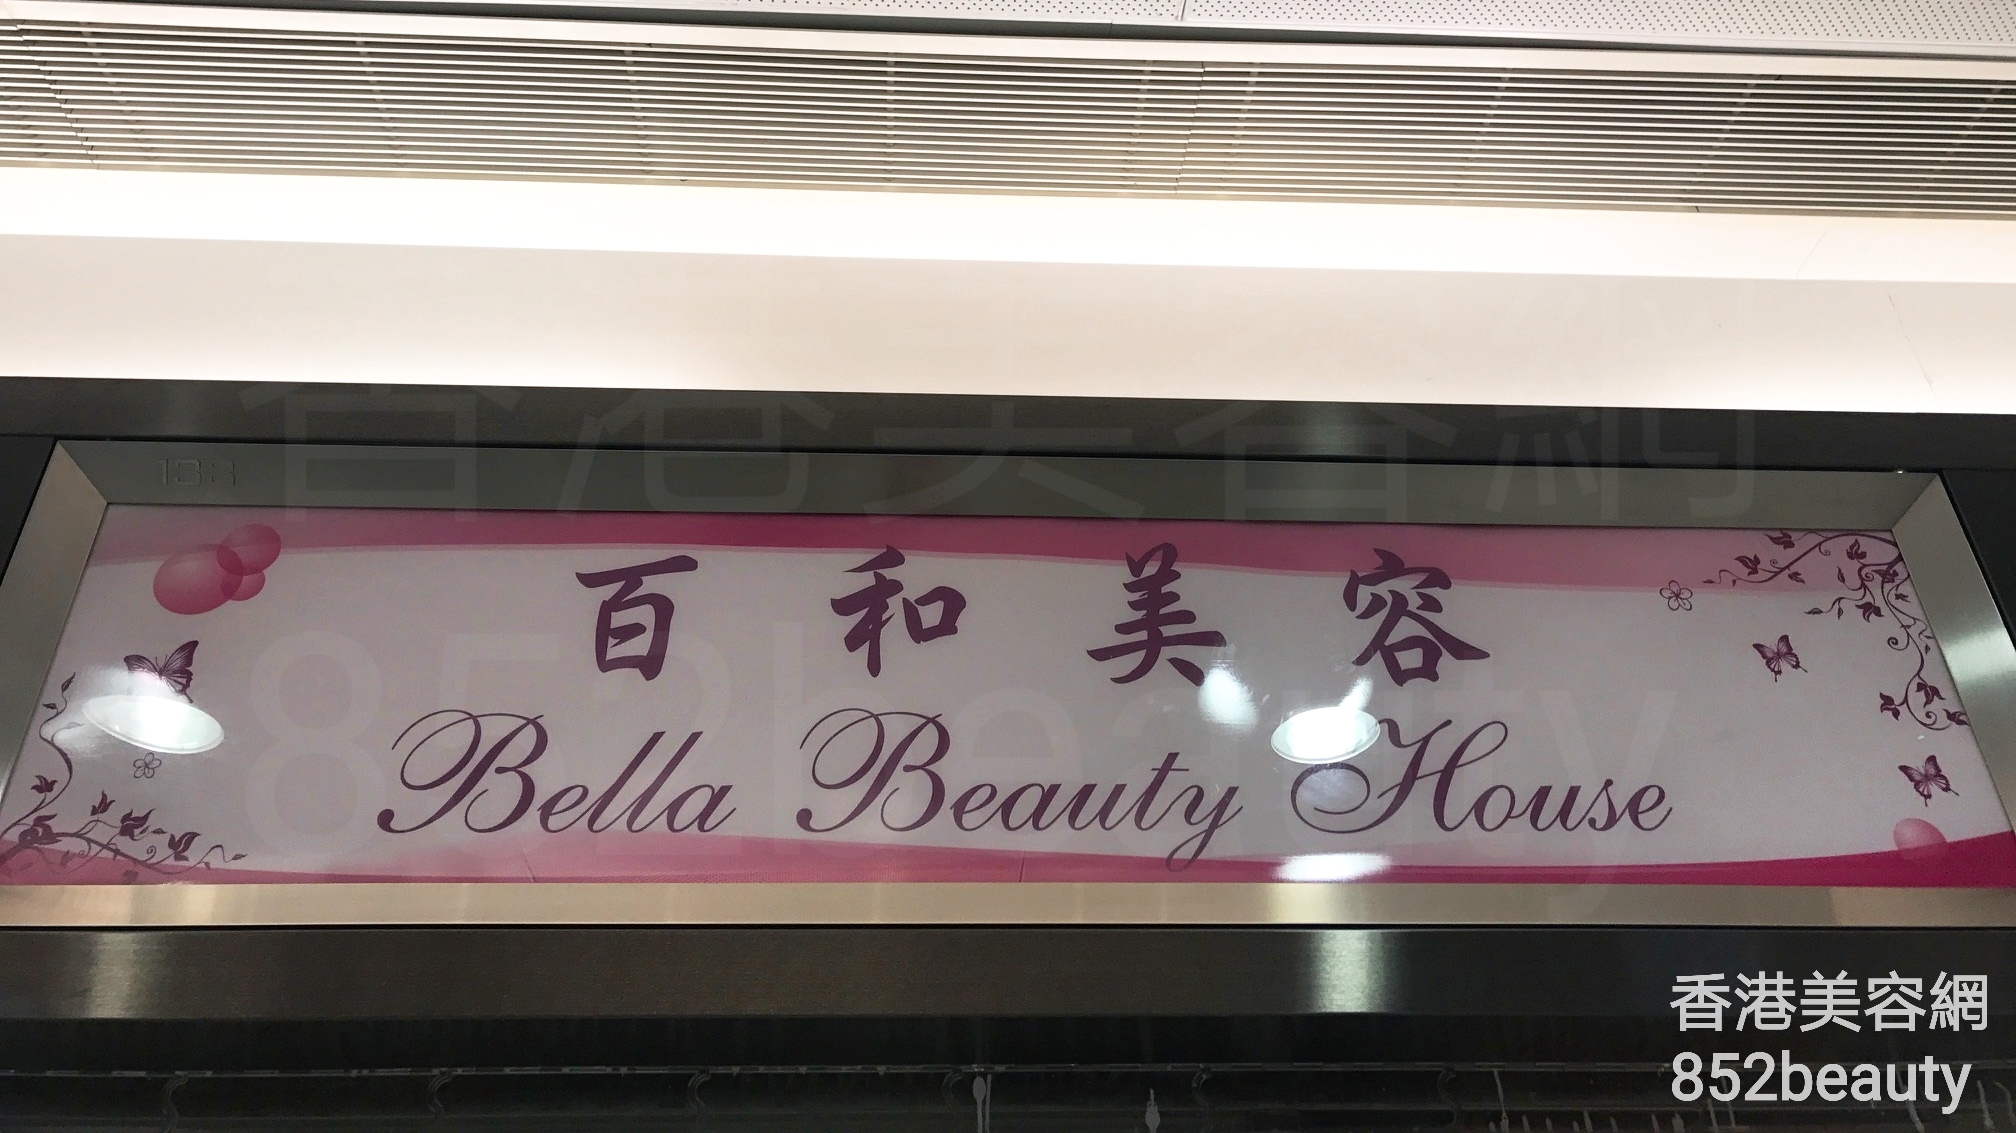 面部护理: 百和美容 Bella Beauty House